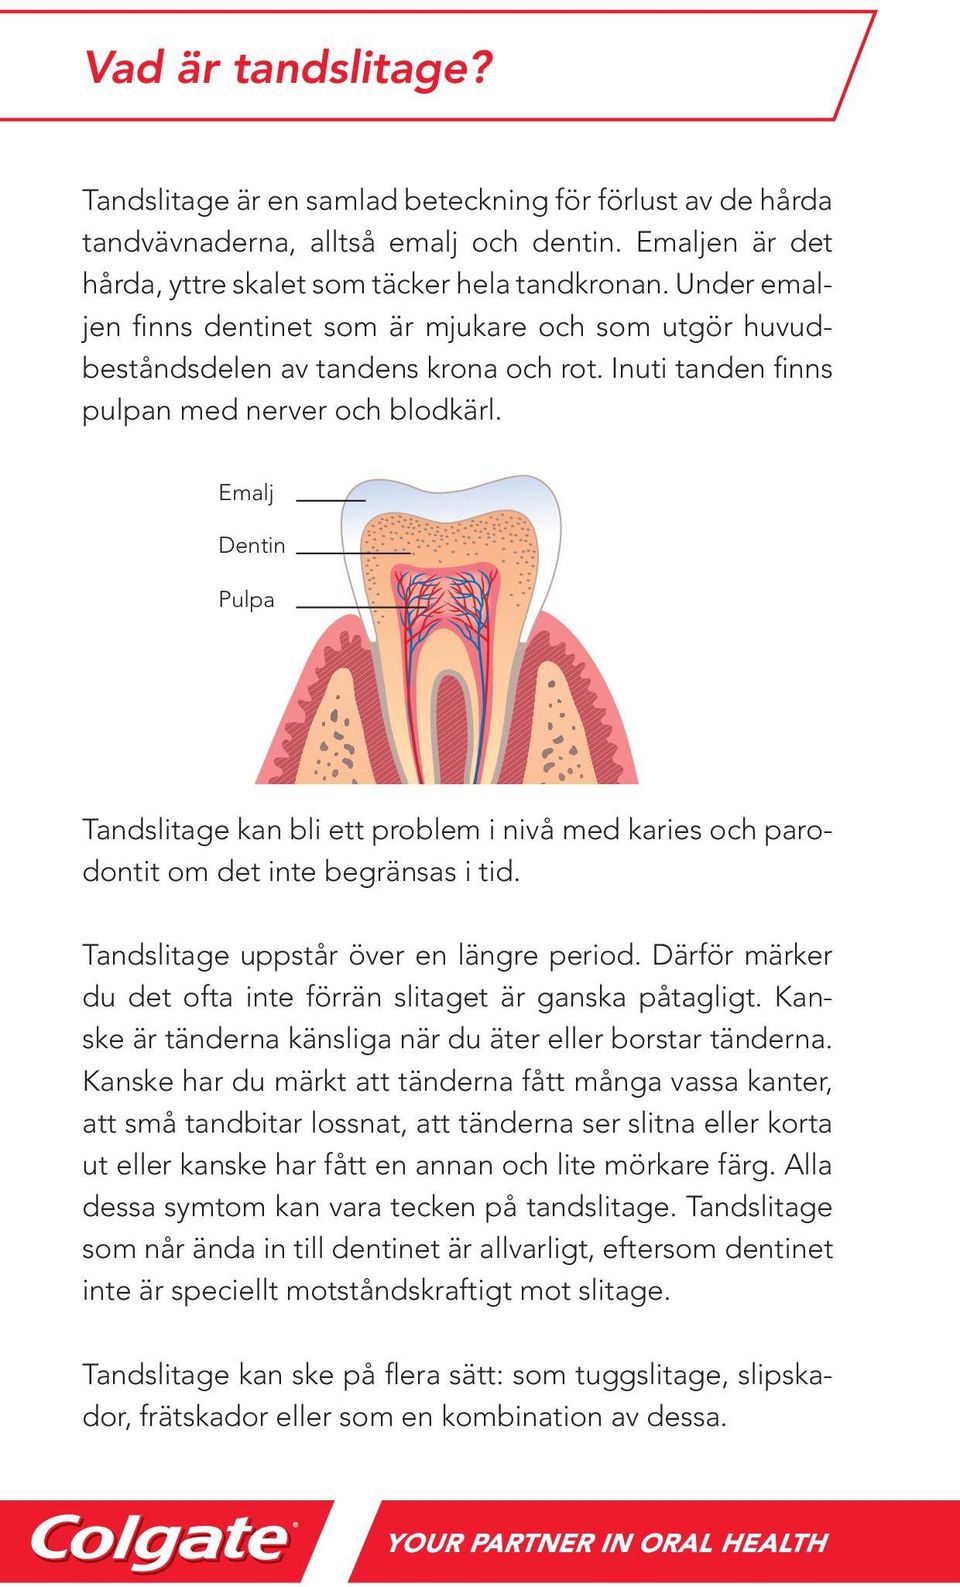 Emalj Dentin Pulpa Tandslitage kan bli ett problem i nivå med karies och parodontit om det inte begränsas i tid. Tandslitage uppstår över en längre period.